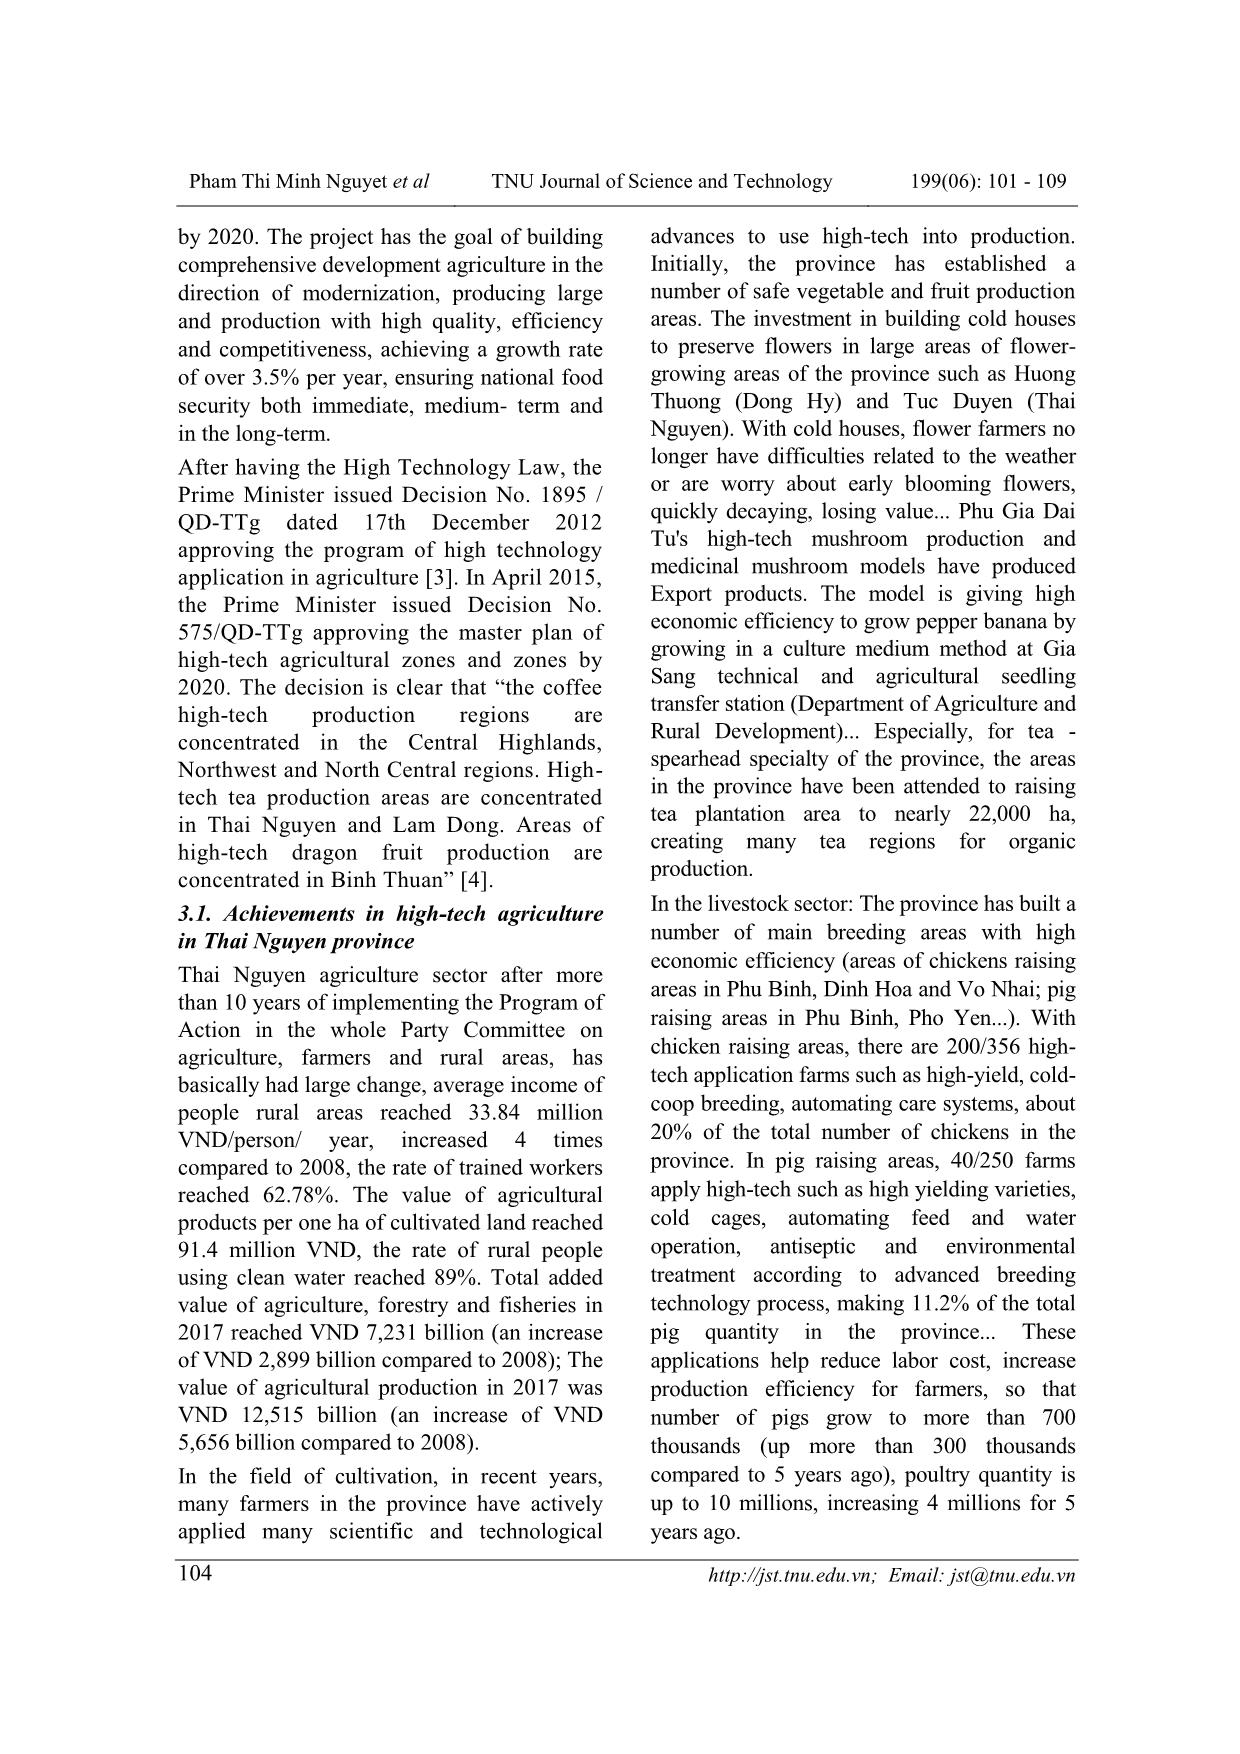 Cuộc cách mạng công nghiệp 4.0 với phát triển nhân lực nông nghiệp công nghệ cao tỉnh Thái Nguyên trang 4